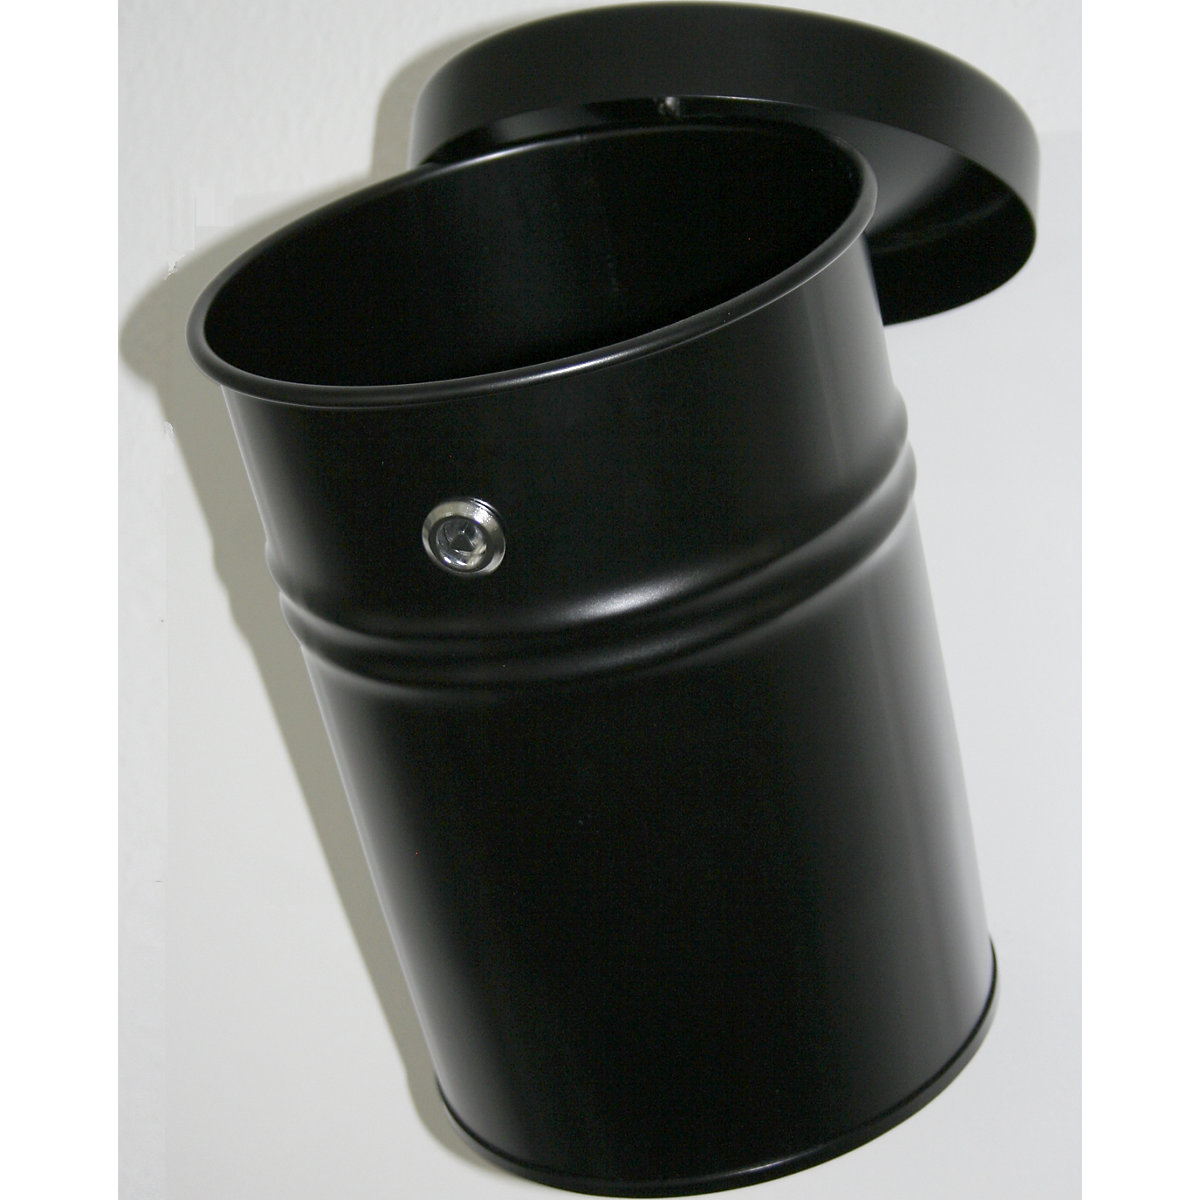 Nástěnná nádoba na odpadky, uzamykatelná, objem 24 l, v x Ø 370 x 295 mm, černá